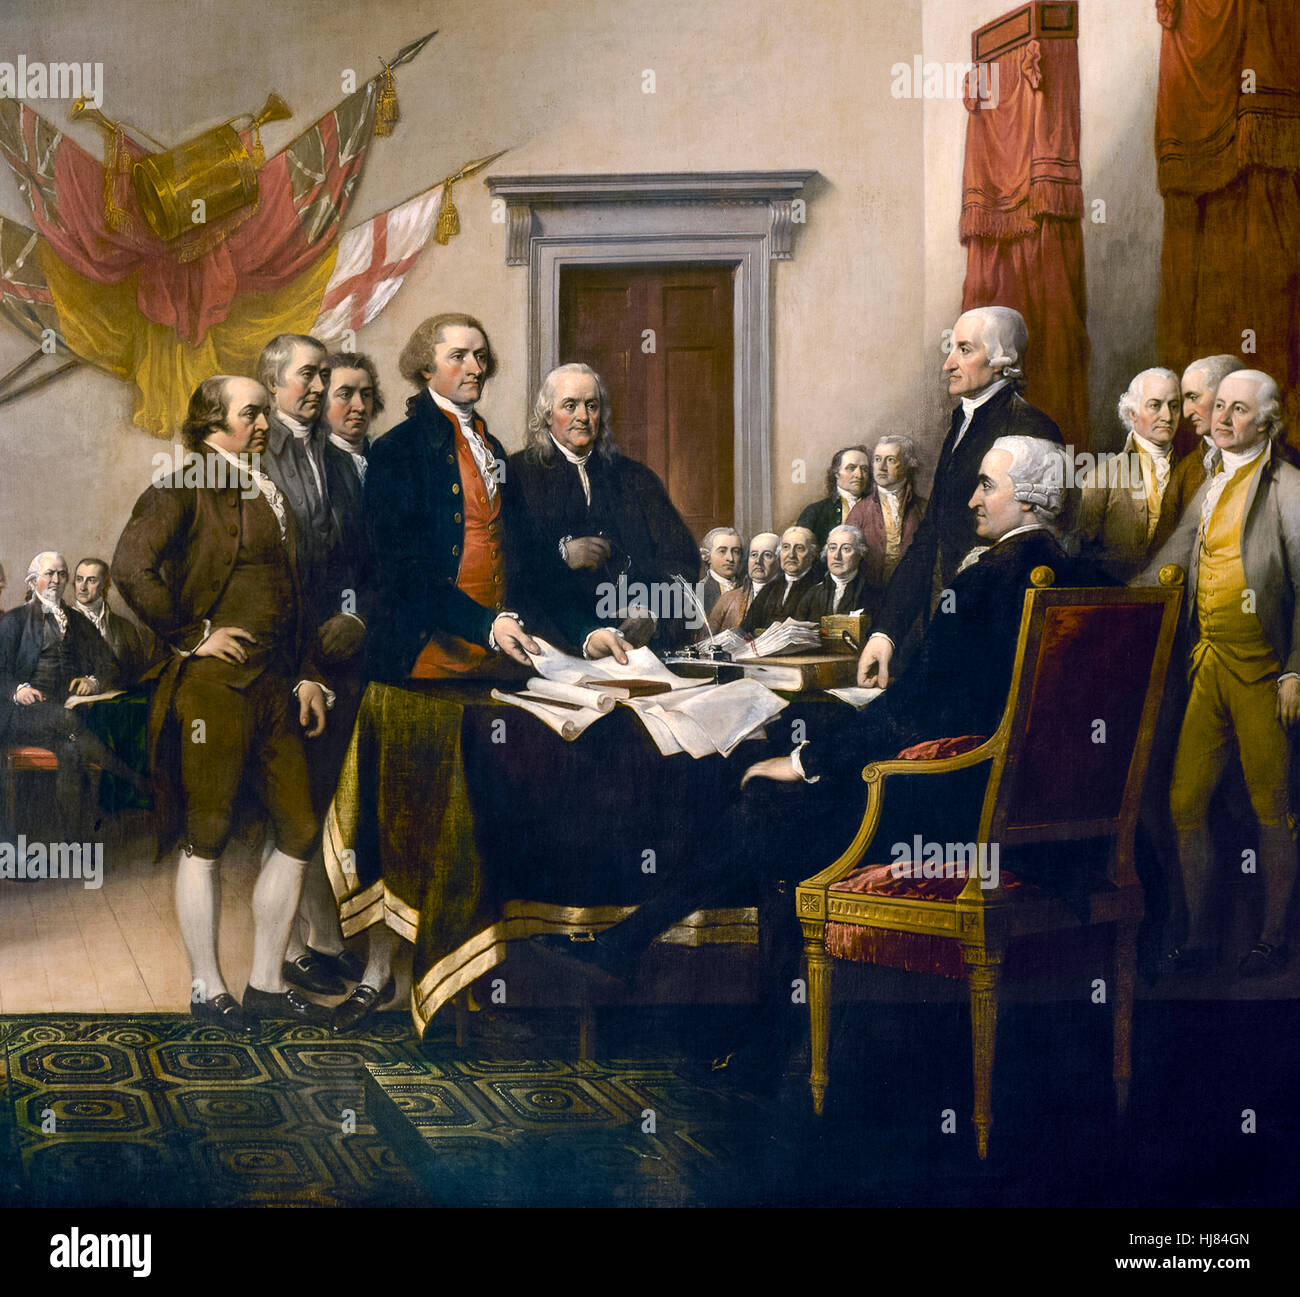 Das Komitee der fünf von den zweiten Kontinentalkongress (von links nach rechts John Adams, Roger Sherman, Robert R. Livingston, Thomas Jefferson und Benjamin Franklin) von "Declaration of Independence", 1817-Öl-Gemälde von John Trumbull (1756-1843). Siehe Beschreibung für mehr Informationen. Stockfoto